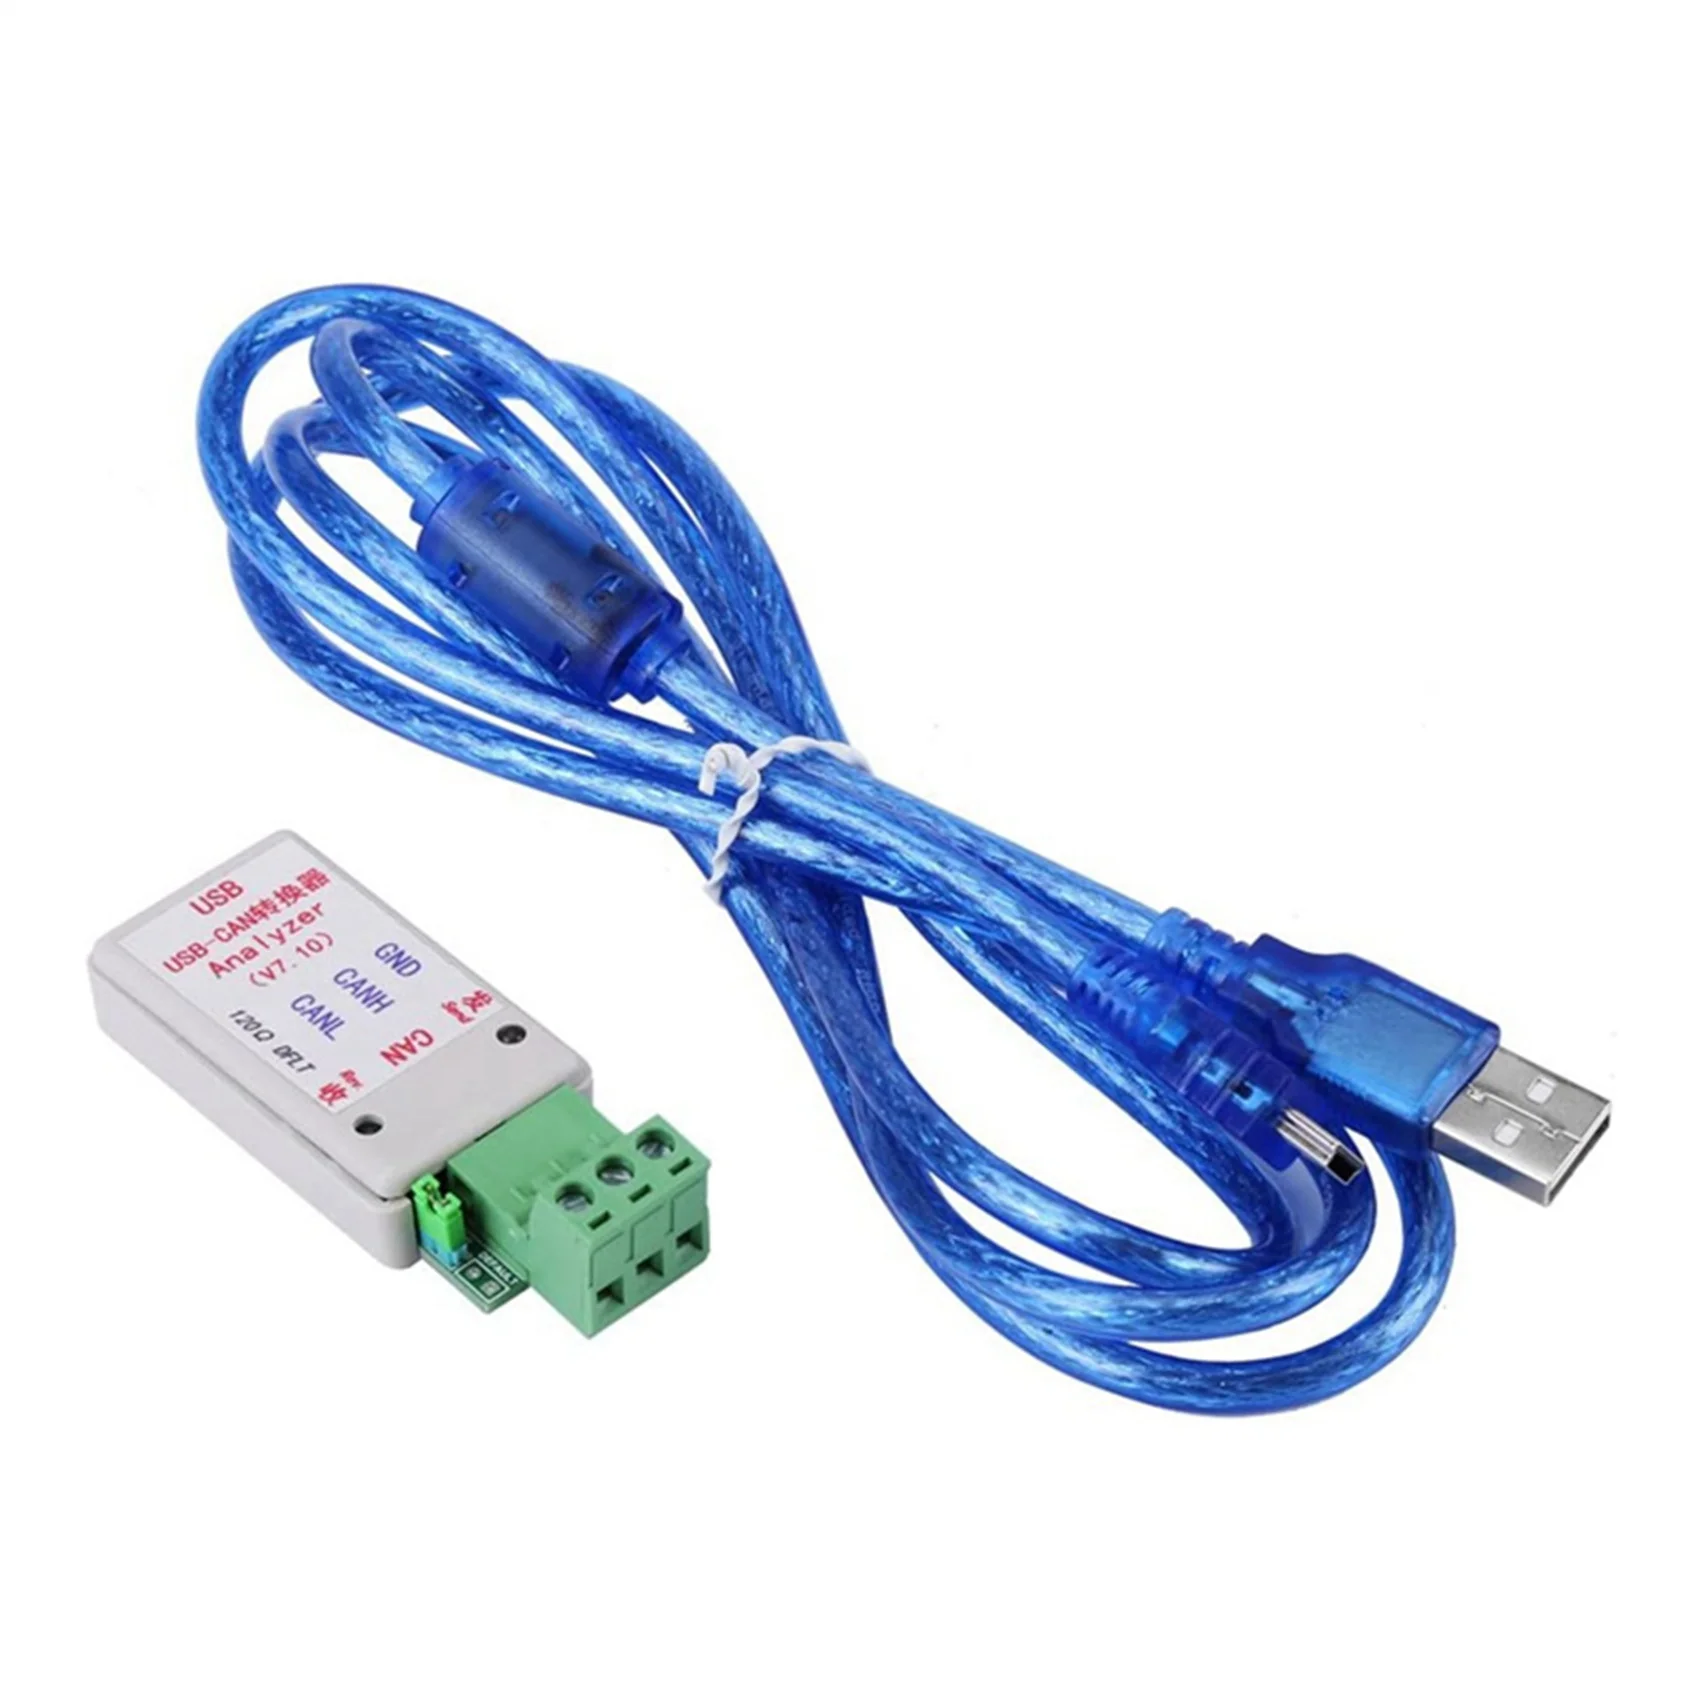 

Преобразователь USB в CAN-шину, адаптер, последовательный порт в CAN /RS232 232 для CAN с защитой телевизора